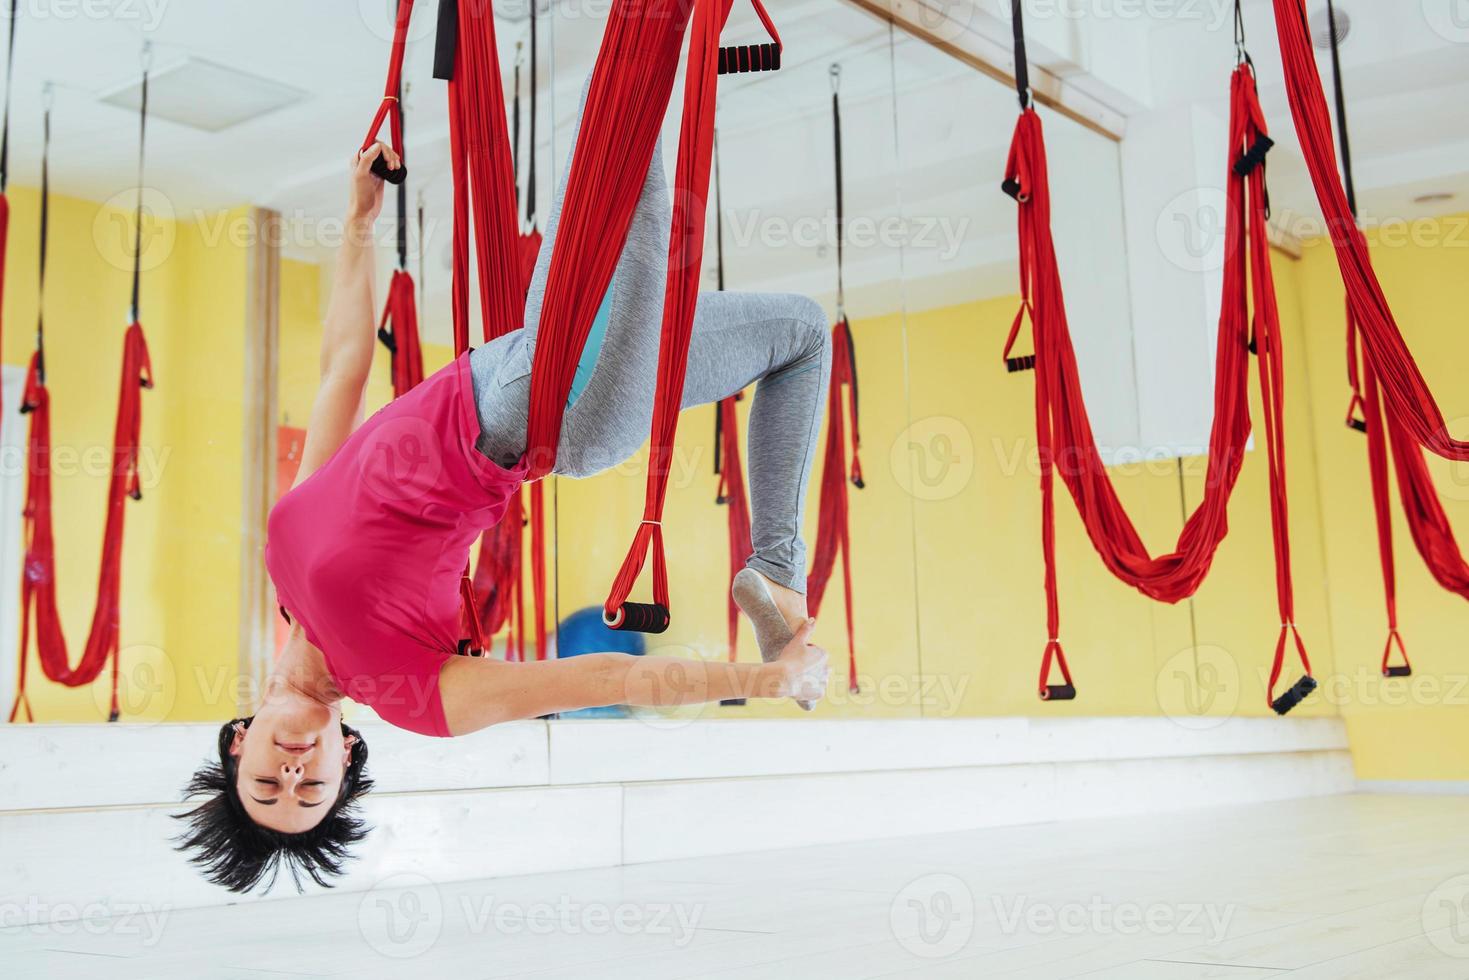 jonge vrouw antigravity yoga-oefeningen maken foto